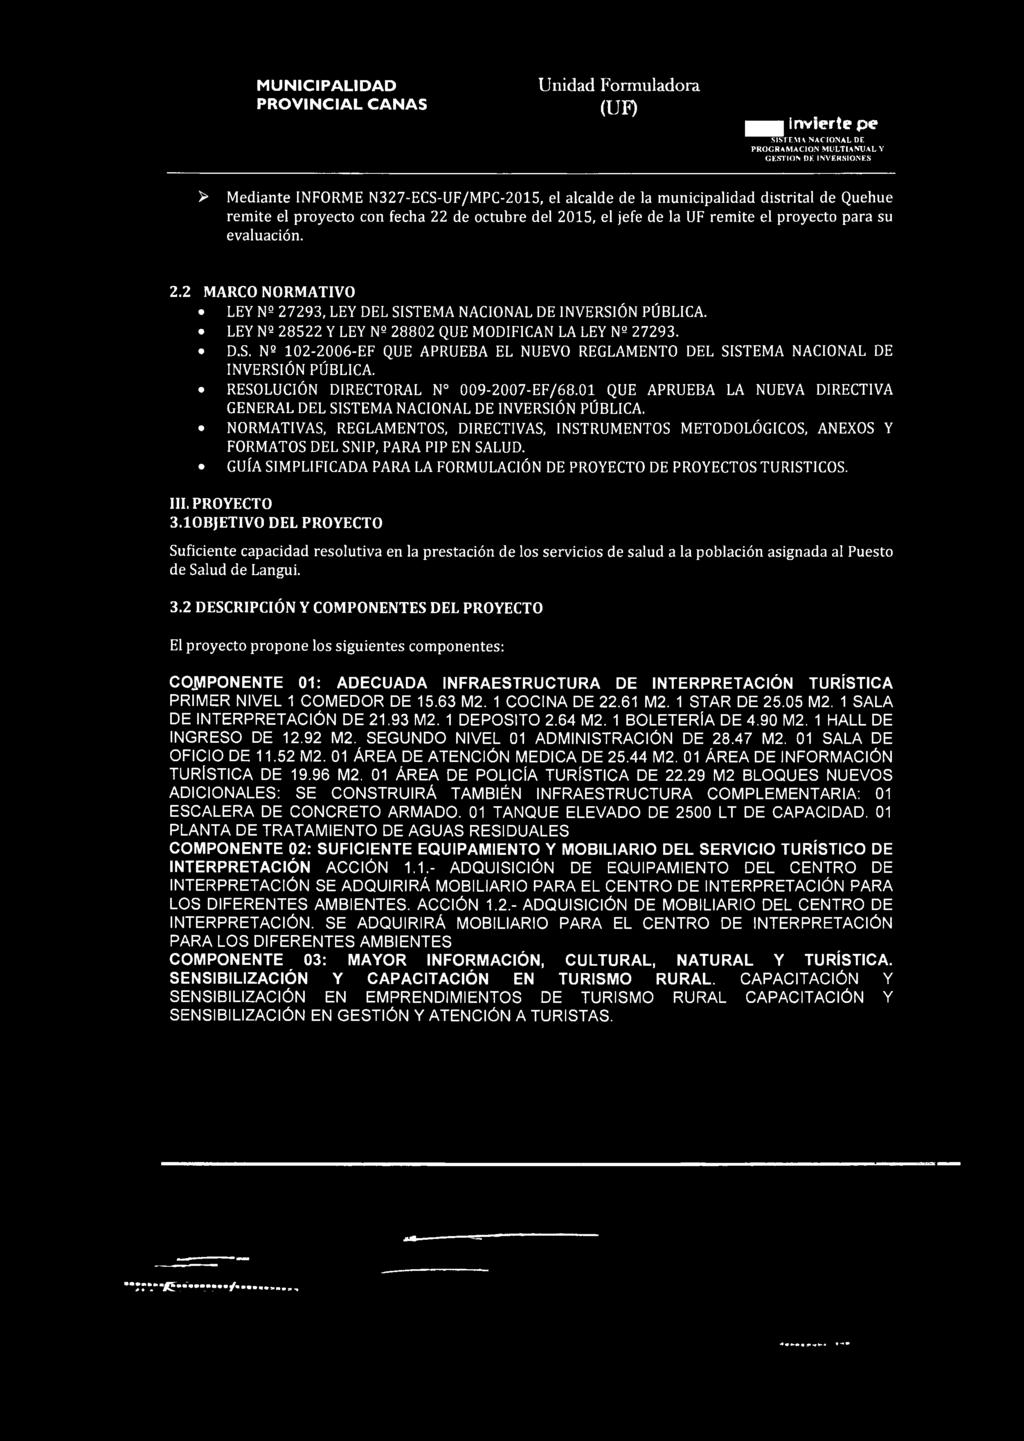 GUÍA SIMPLIFICADA PARA LA FORMULACIÓN DE PROYECTO DE PROYECTOS TURISTICOS. III. PROYECTO 3.